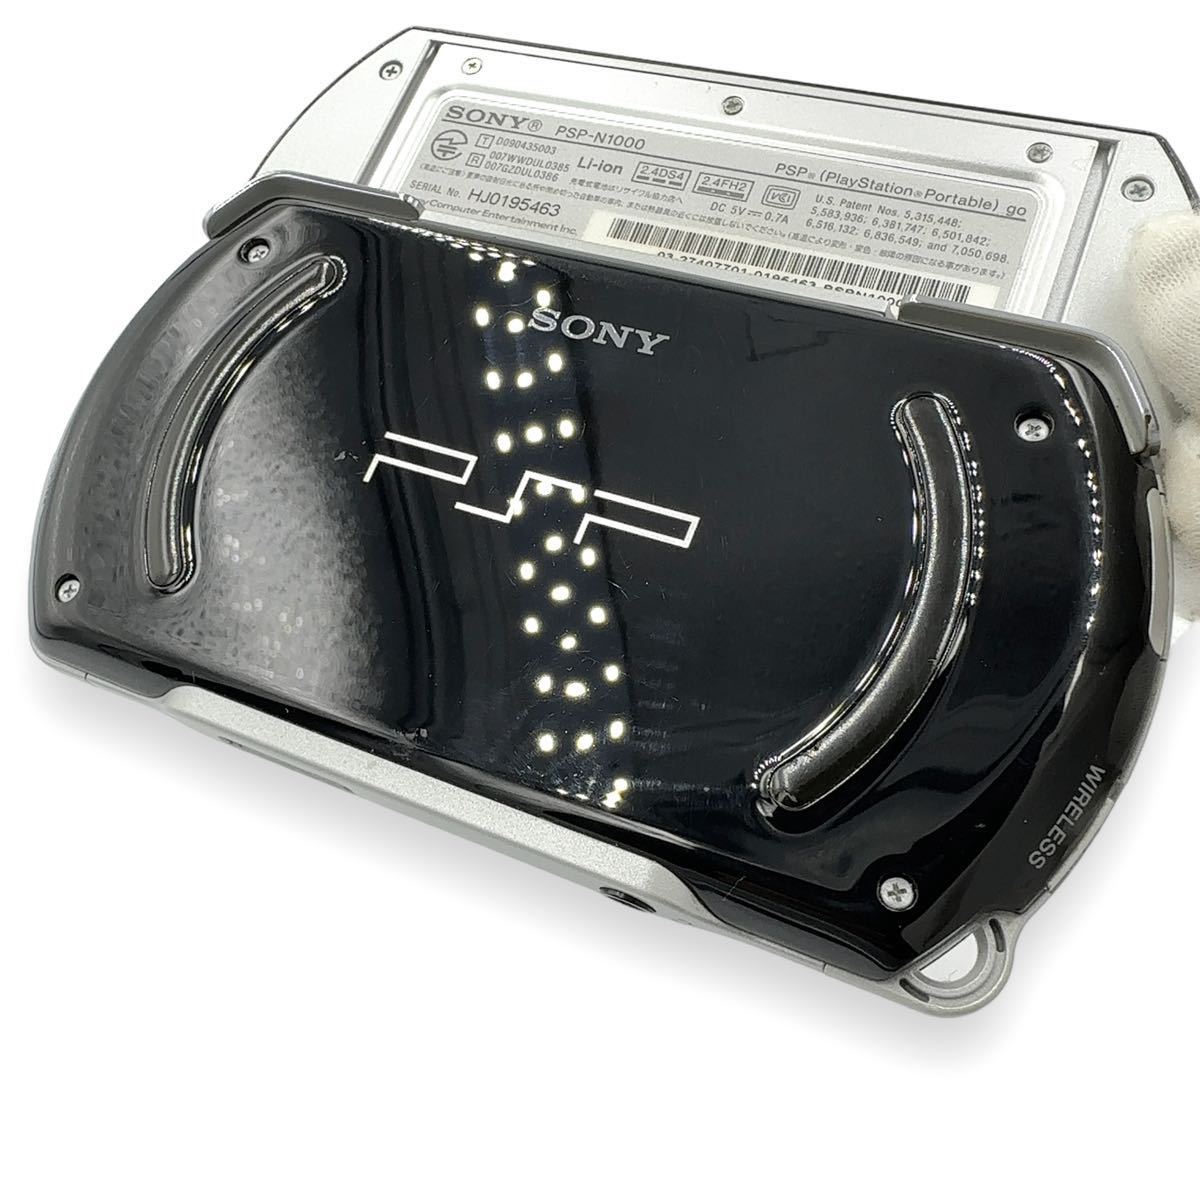  редкость SONY PSP go корпус 16GB фортепьяно черный PSP-N1000 PlayStation PlayStation go закончившийся товар рабочее состояние подтверждено 